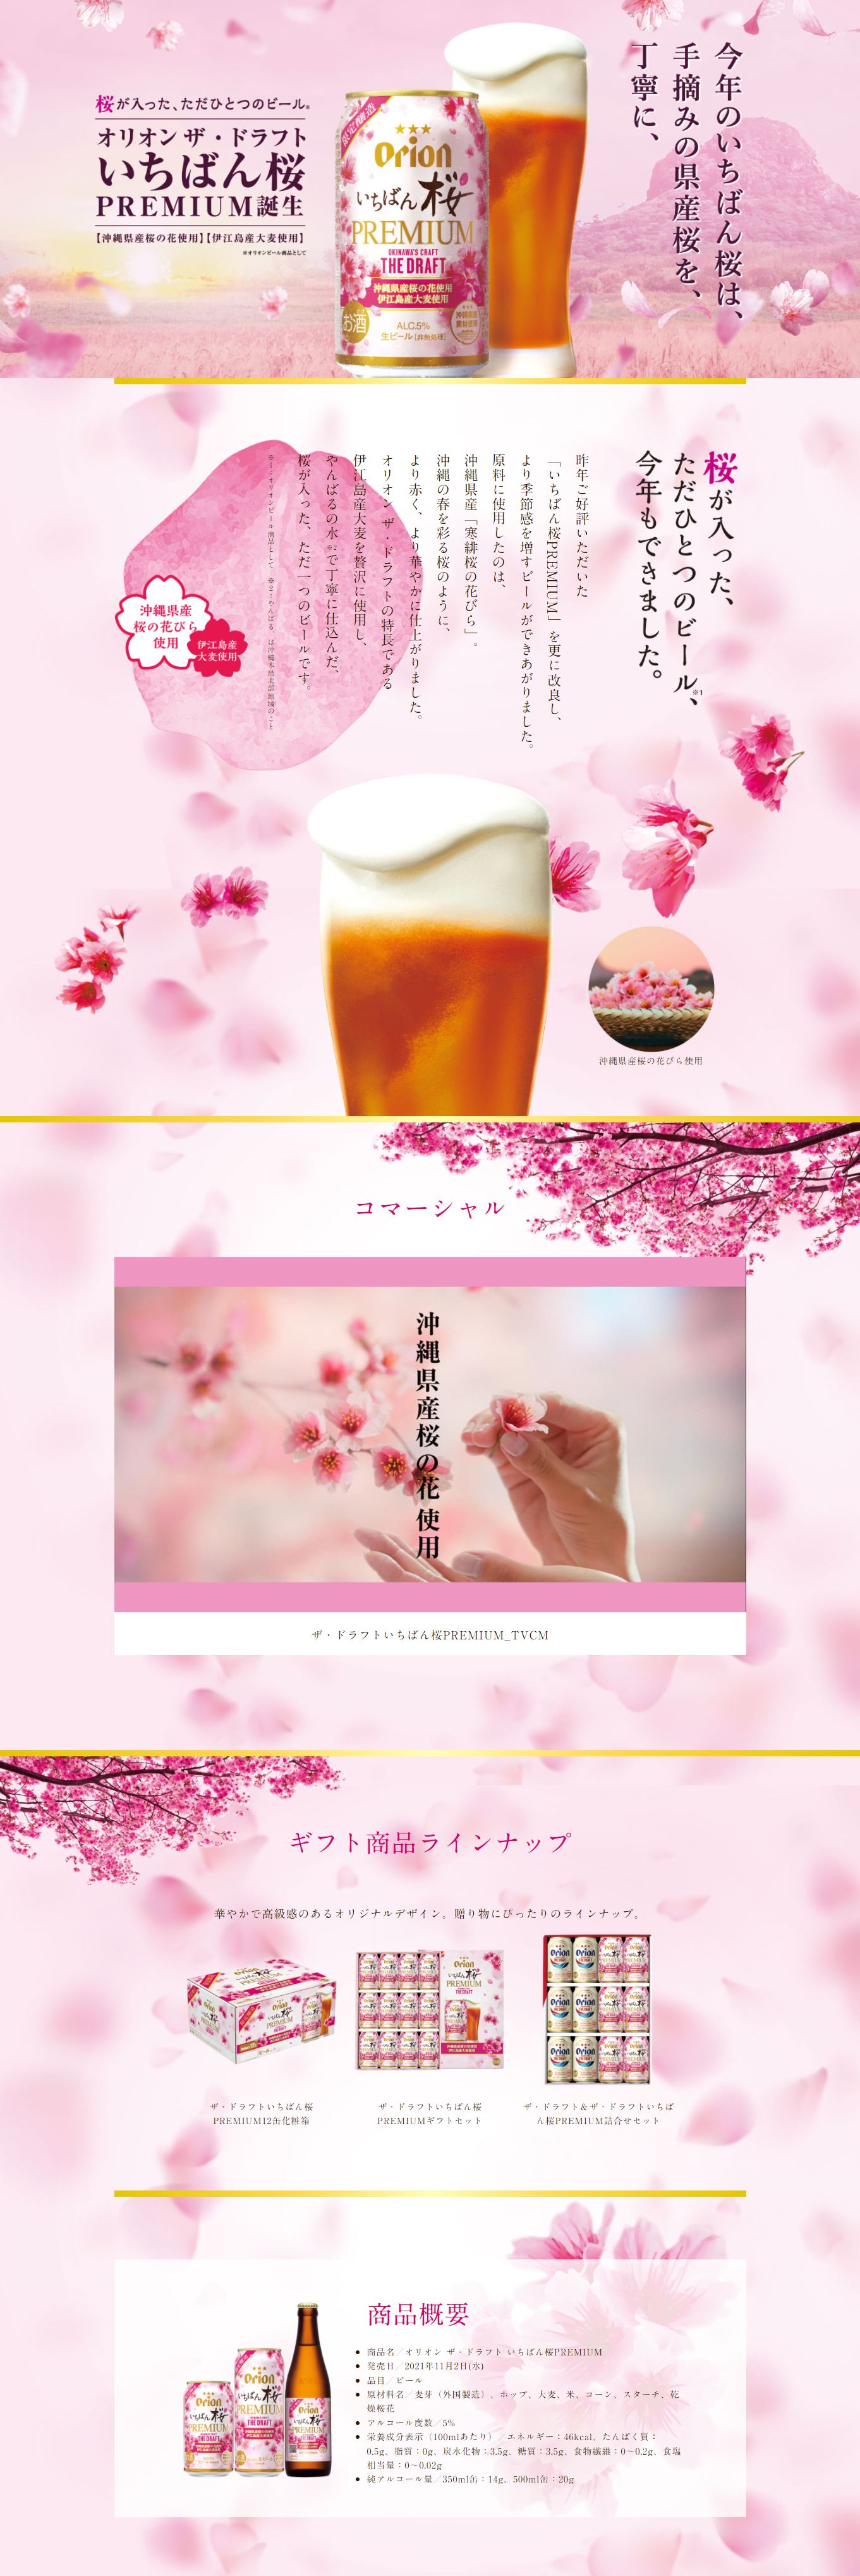 ザ・ドラフトいちばん桜PREMIUM_pc_1